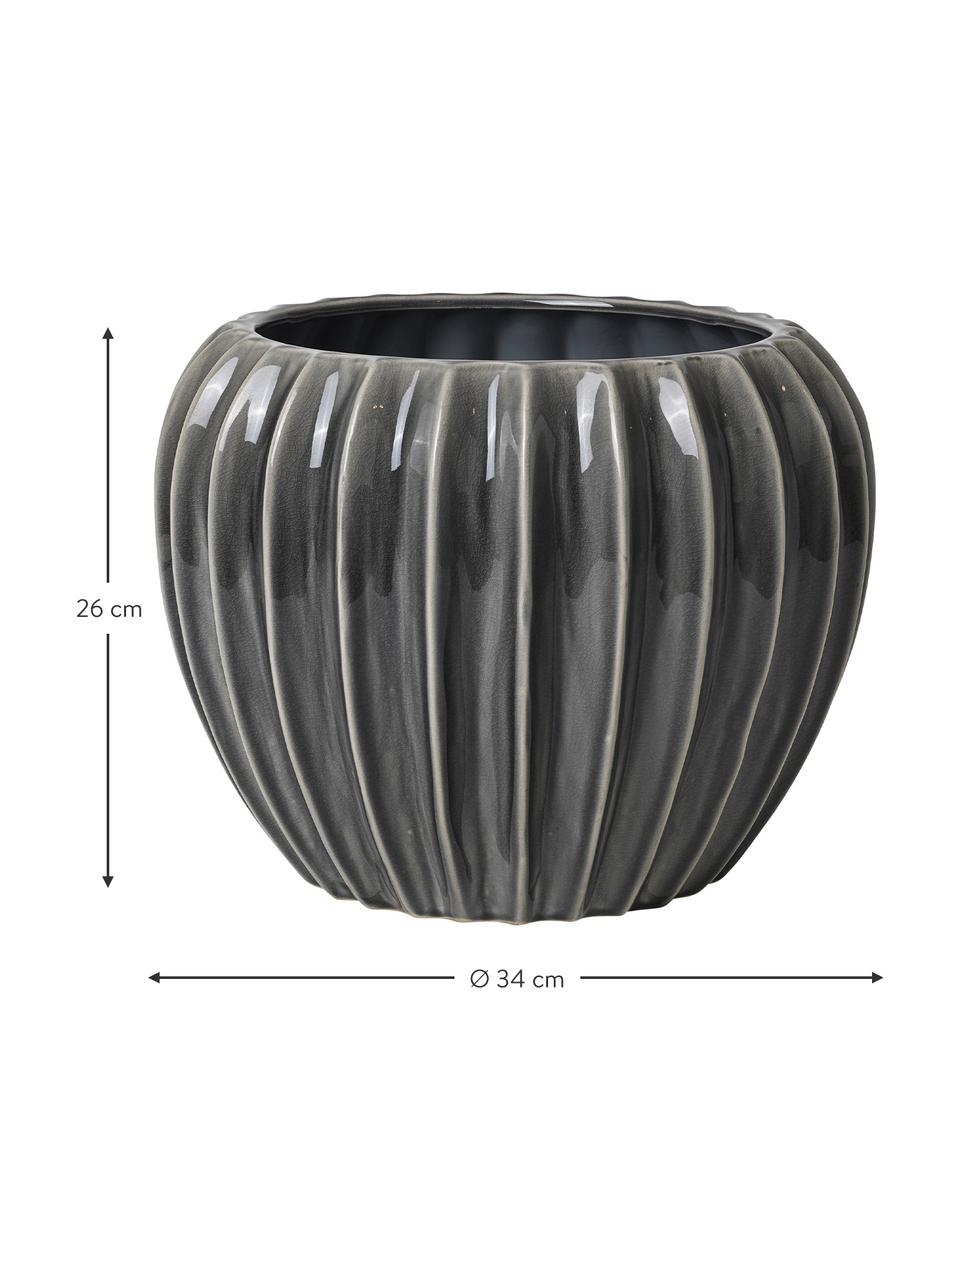 Velký keramický obal na květináče Wide, Keramika, Šedá, béžová, Ø 34 cm, V 26 cm